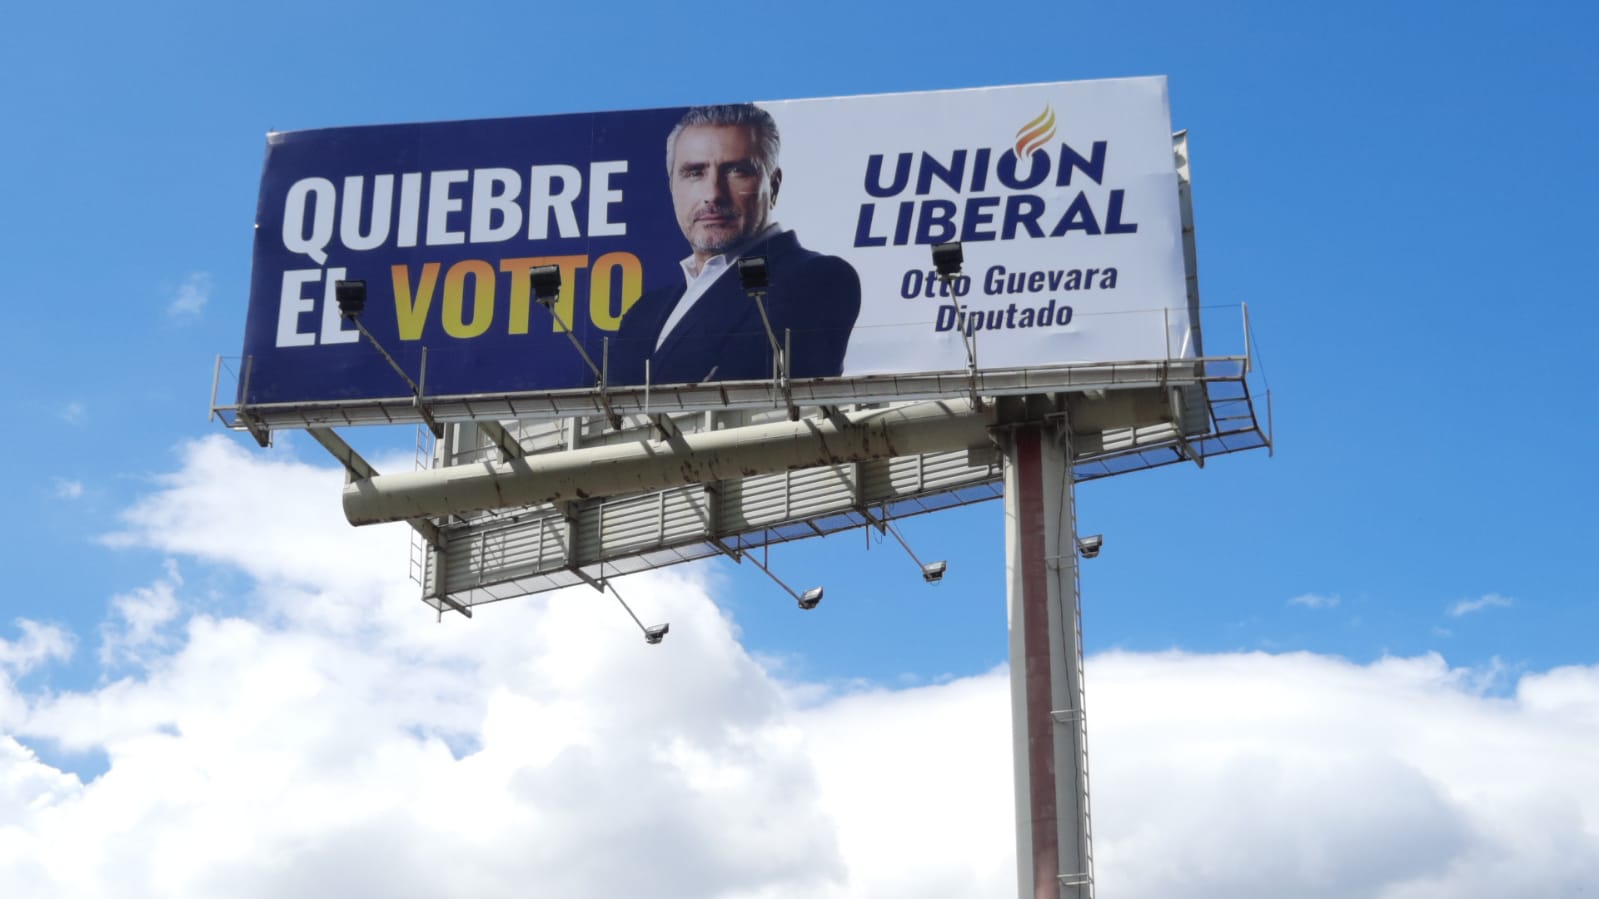 Otto Guevara llama a “quebrar el voto” en busca de lograr curules liberales